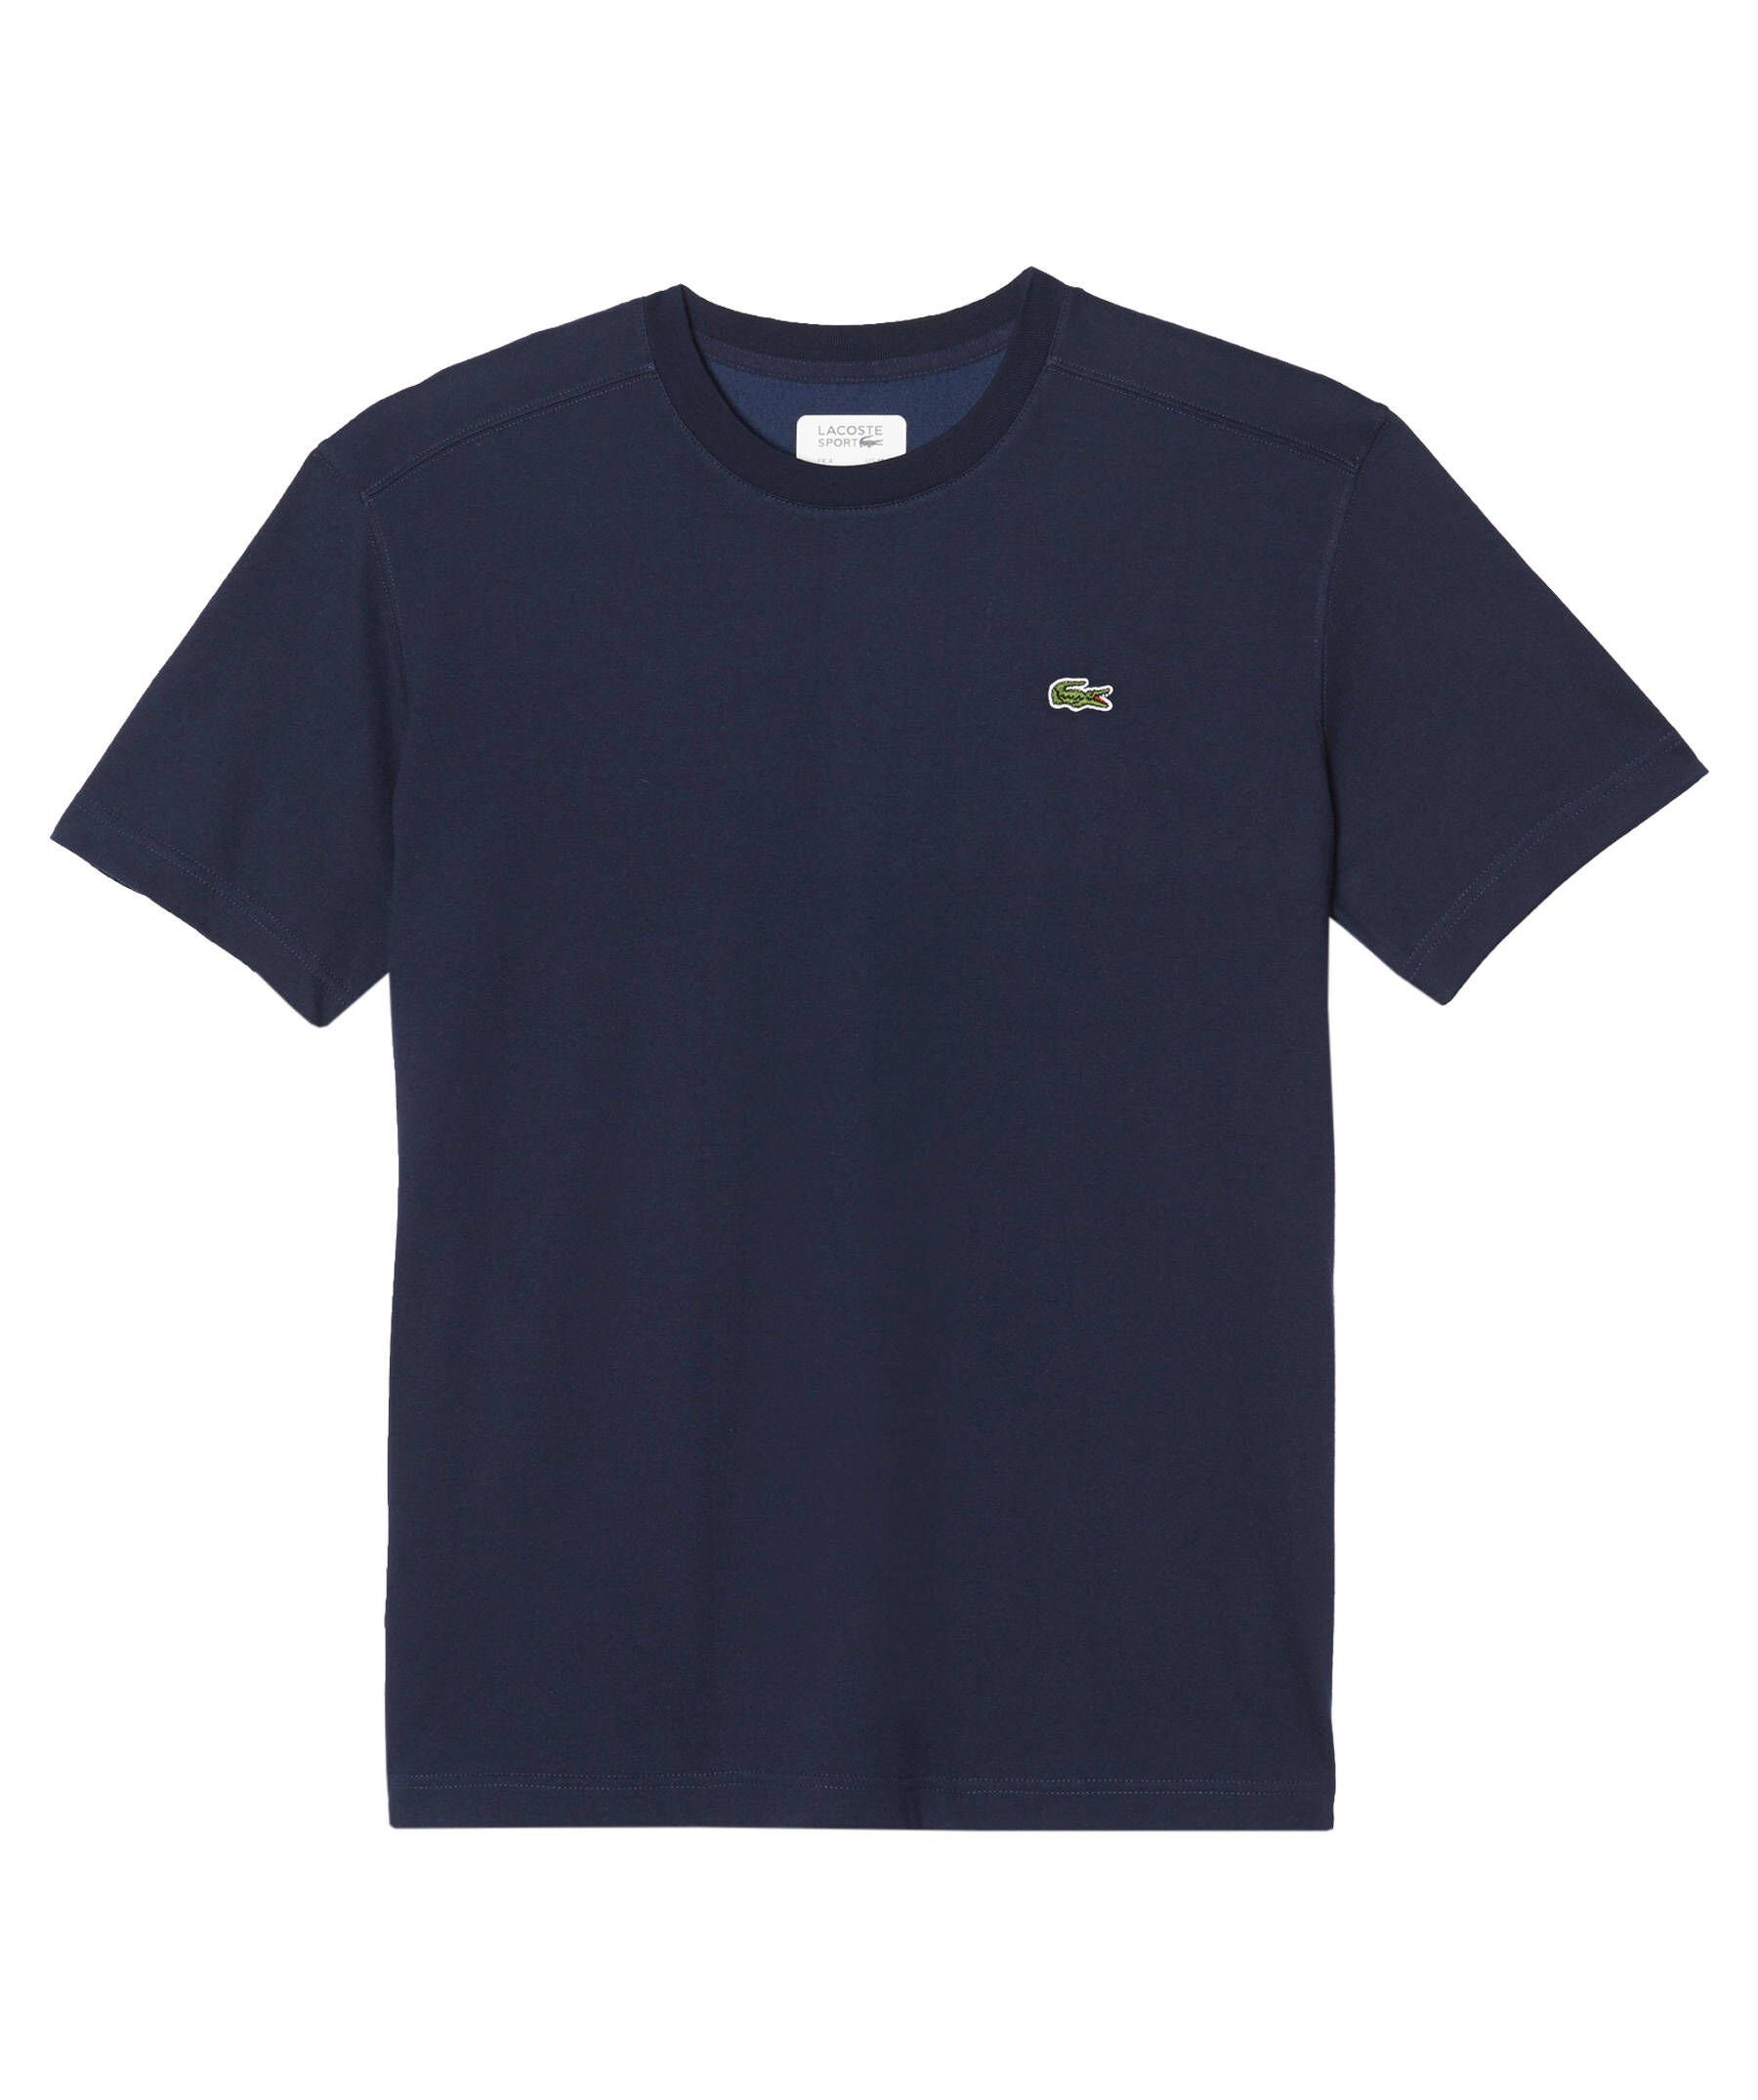 Lacoste TEE-SHIRT Tennisshirt Herren Tennisshirt (300) Sport marine